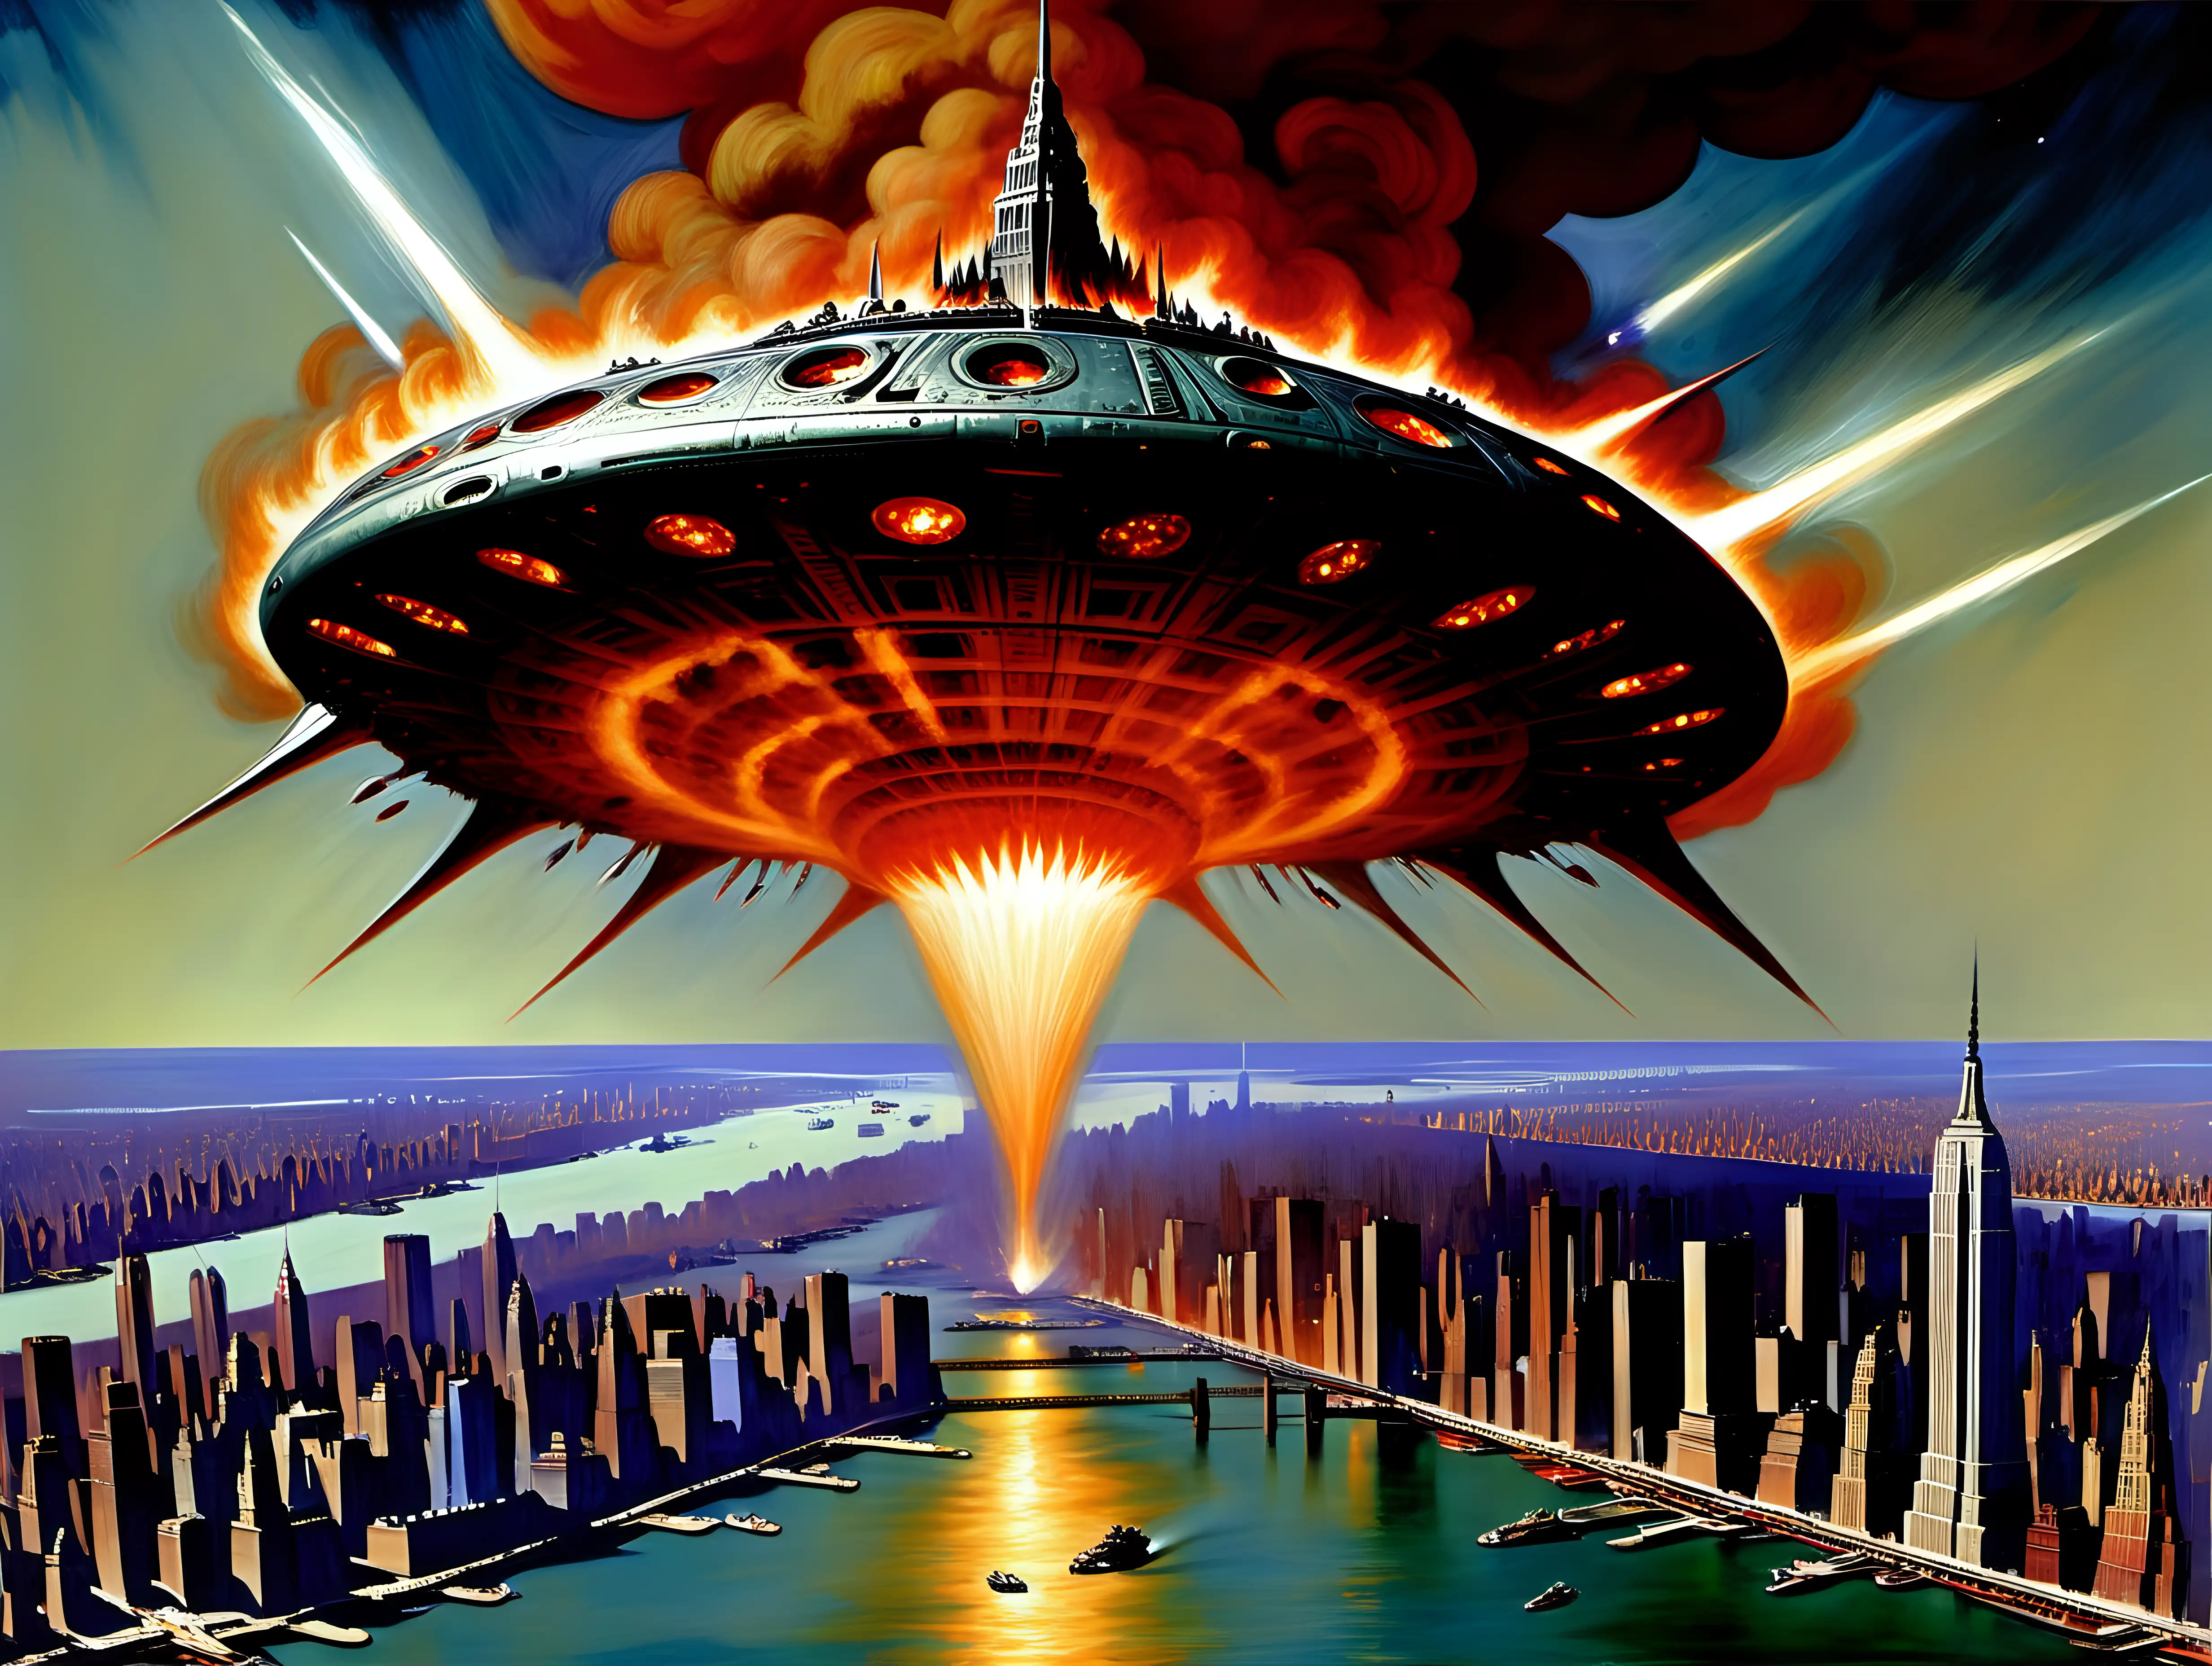 1940s New York City Under Alien Spaceship Attack in Frank Frazetta Style